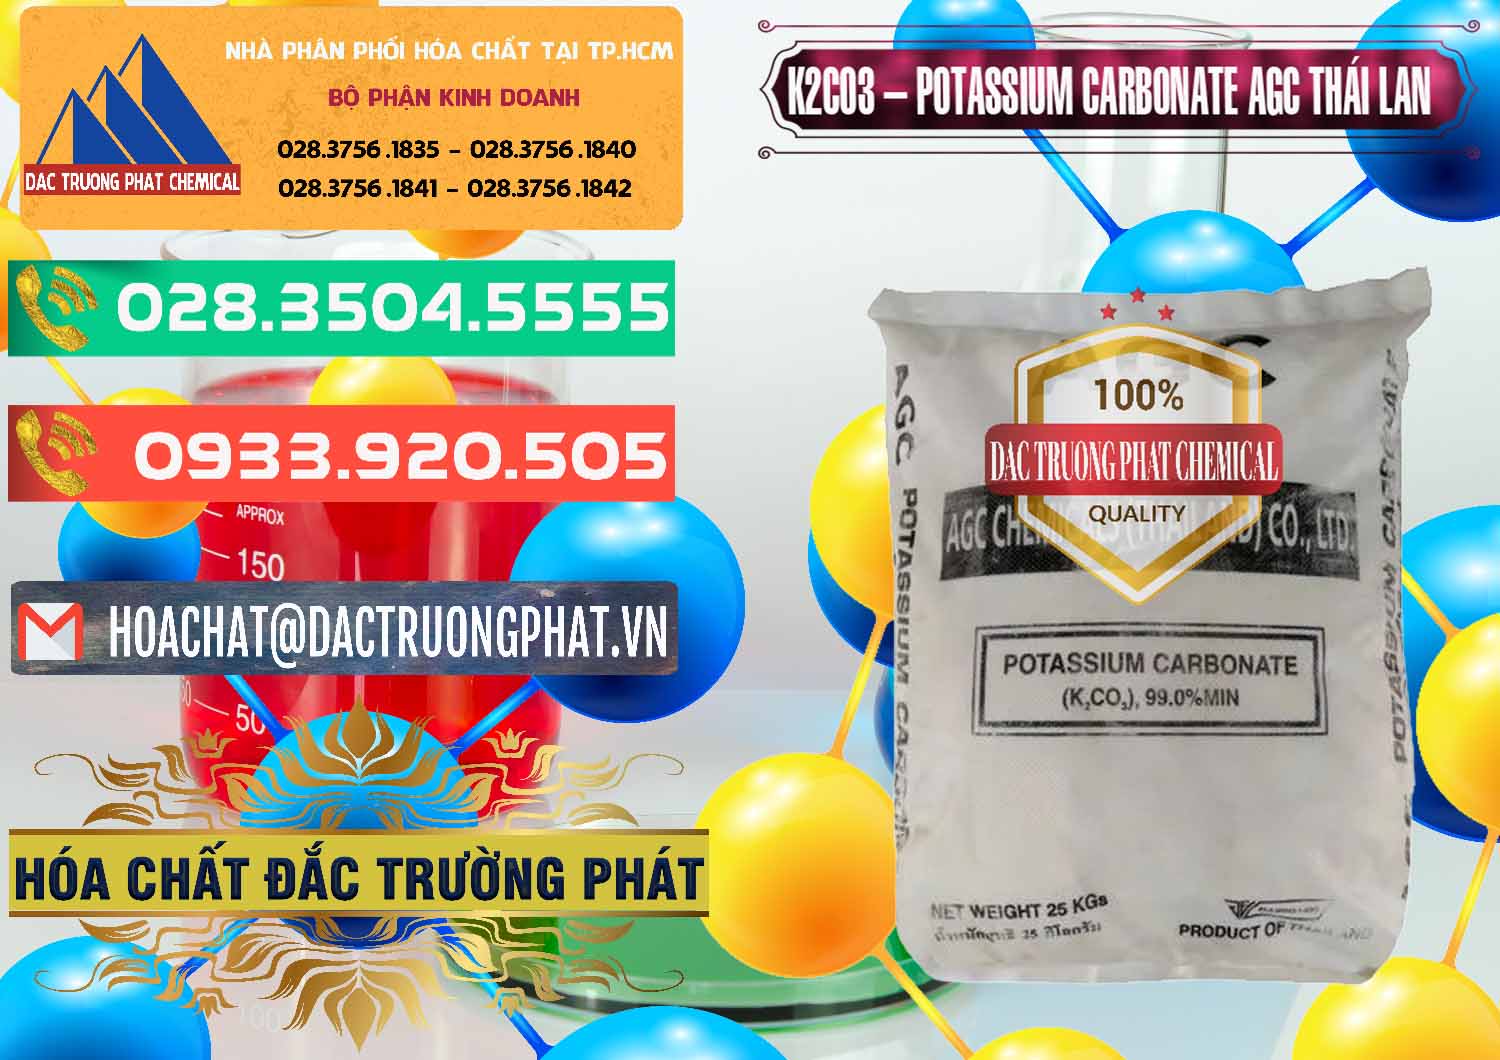 Chuyên bán - cung cấp K2Co3 – Potassium Carbonate AGC Thái Lan Thailand - 0471 - Công ty chuyên cung cấp và kinh doanh hóa chất tại TP.HCM - congtyhoachat.com.vn